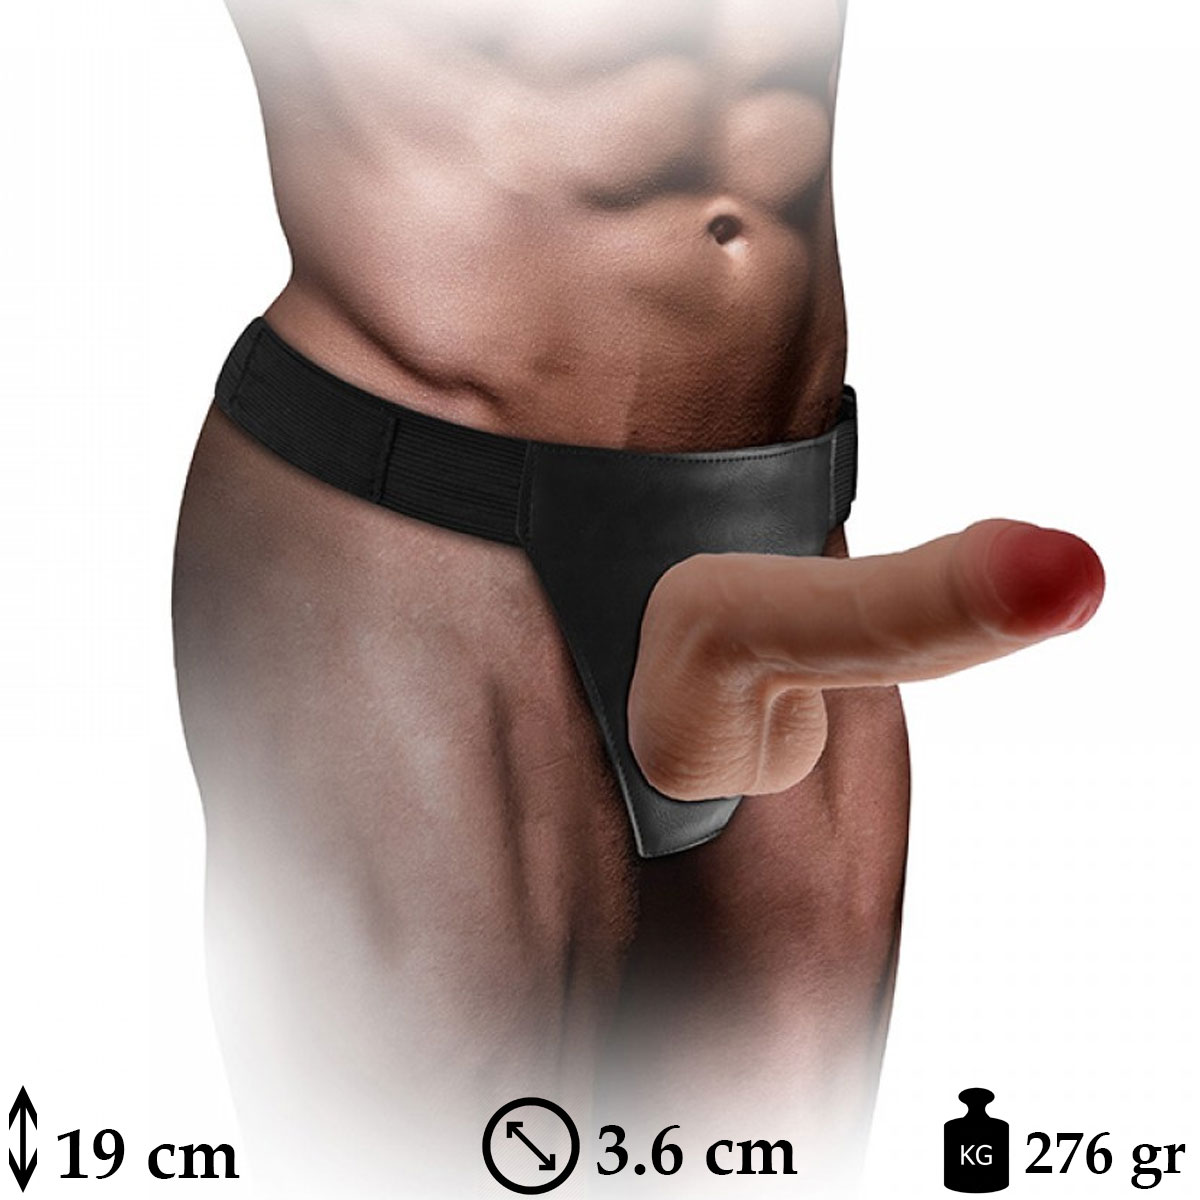 Xman Dildo 19 cm Boy 3.6 cm ap Bklebilir Belden Baglamali Protez Penis C-YN7250